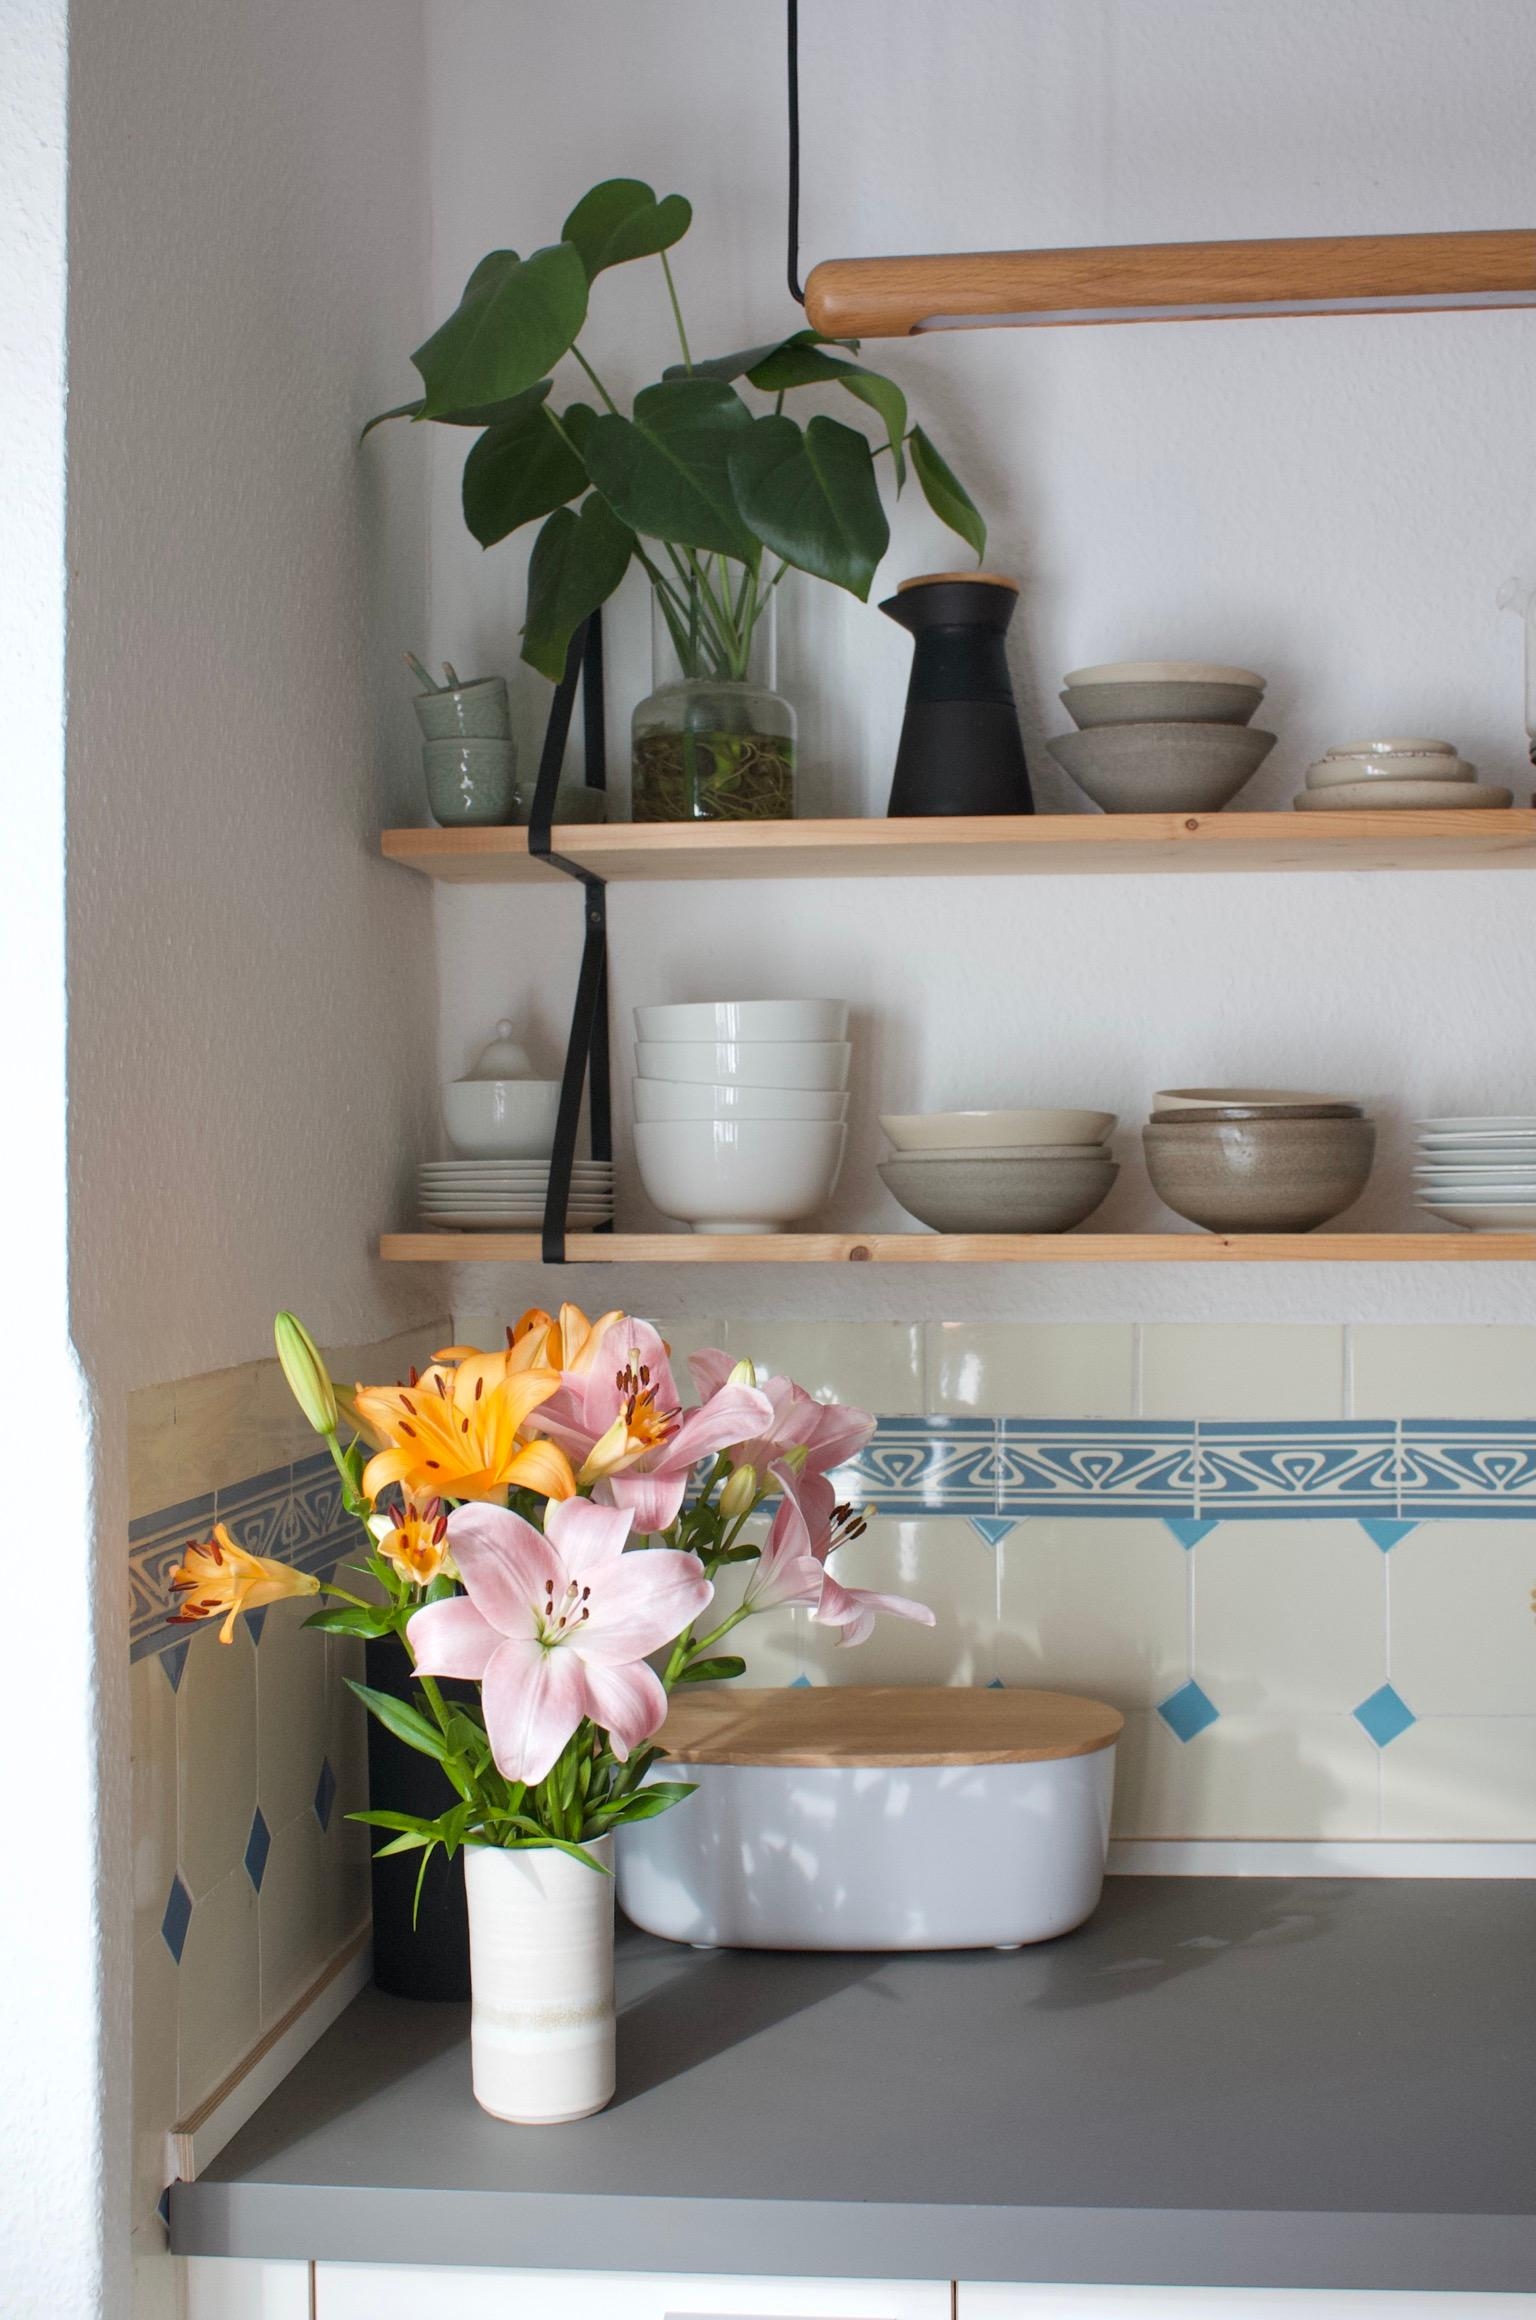 #freshflowerfriday #lilien #küche #keramik #blumen #diyregal 